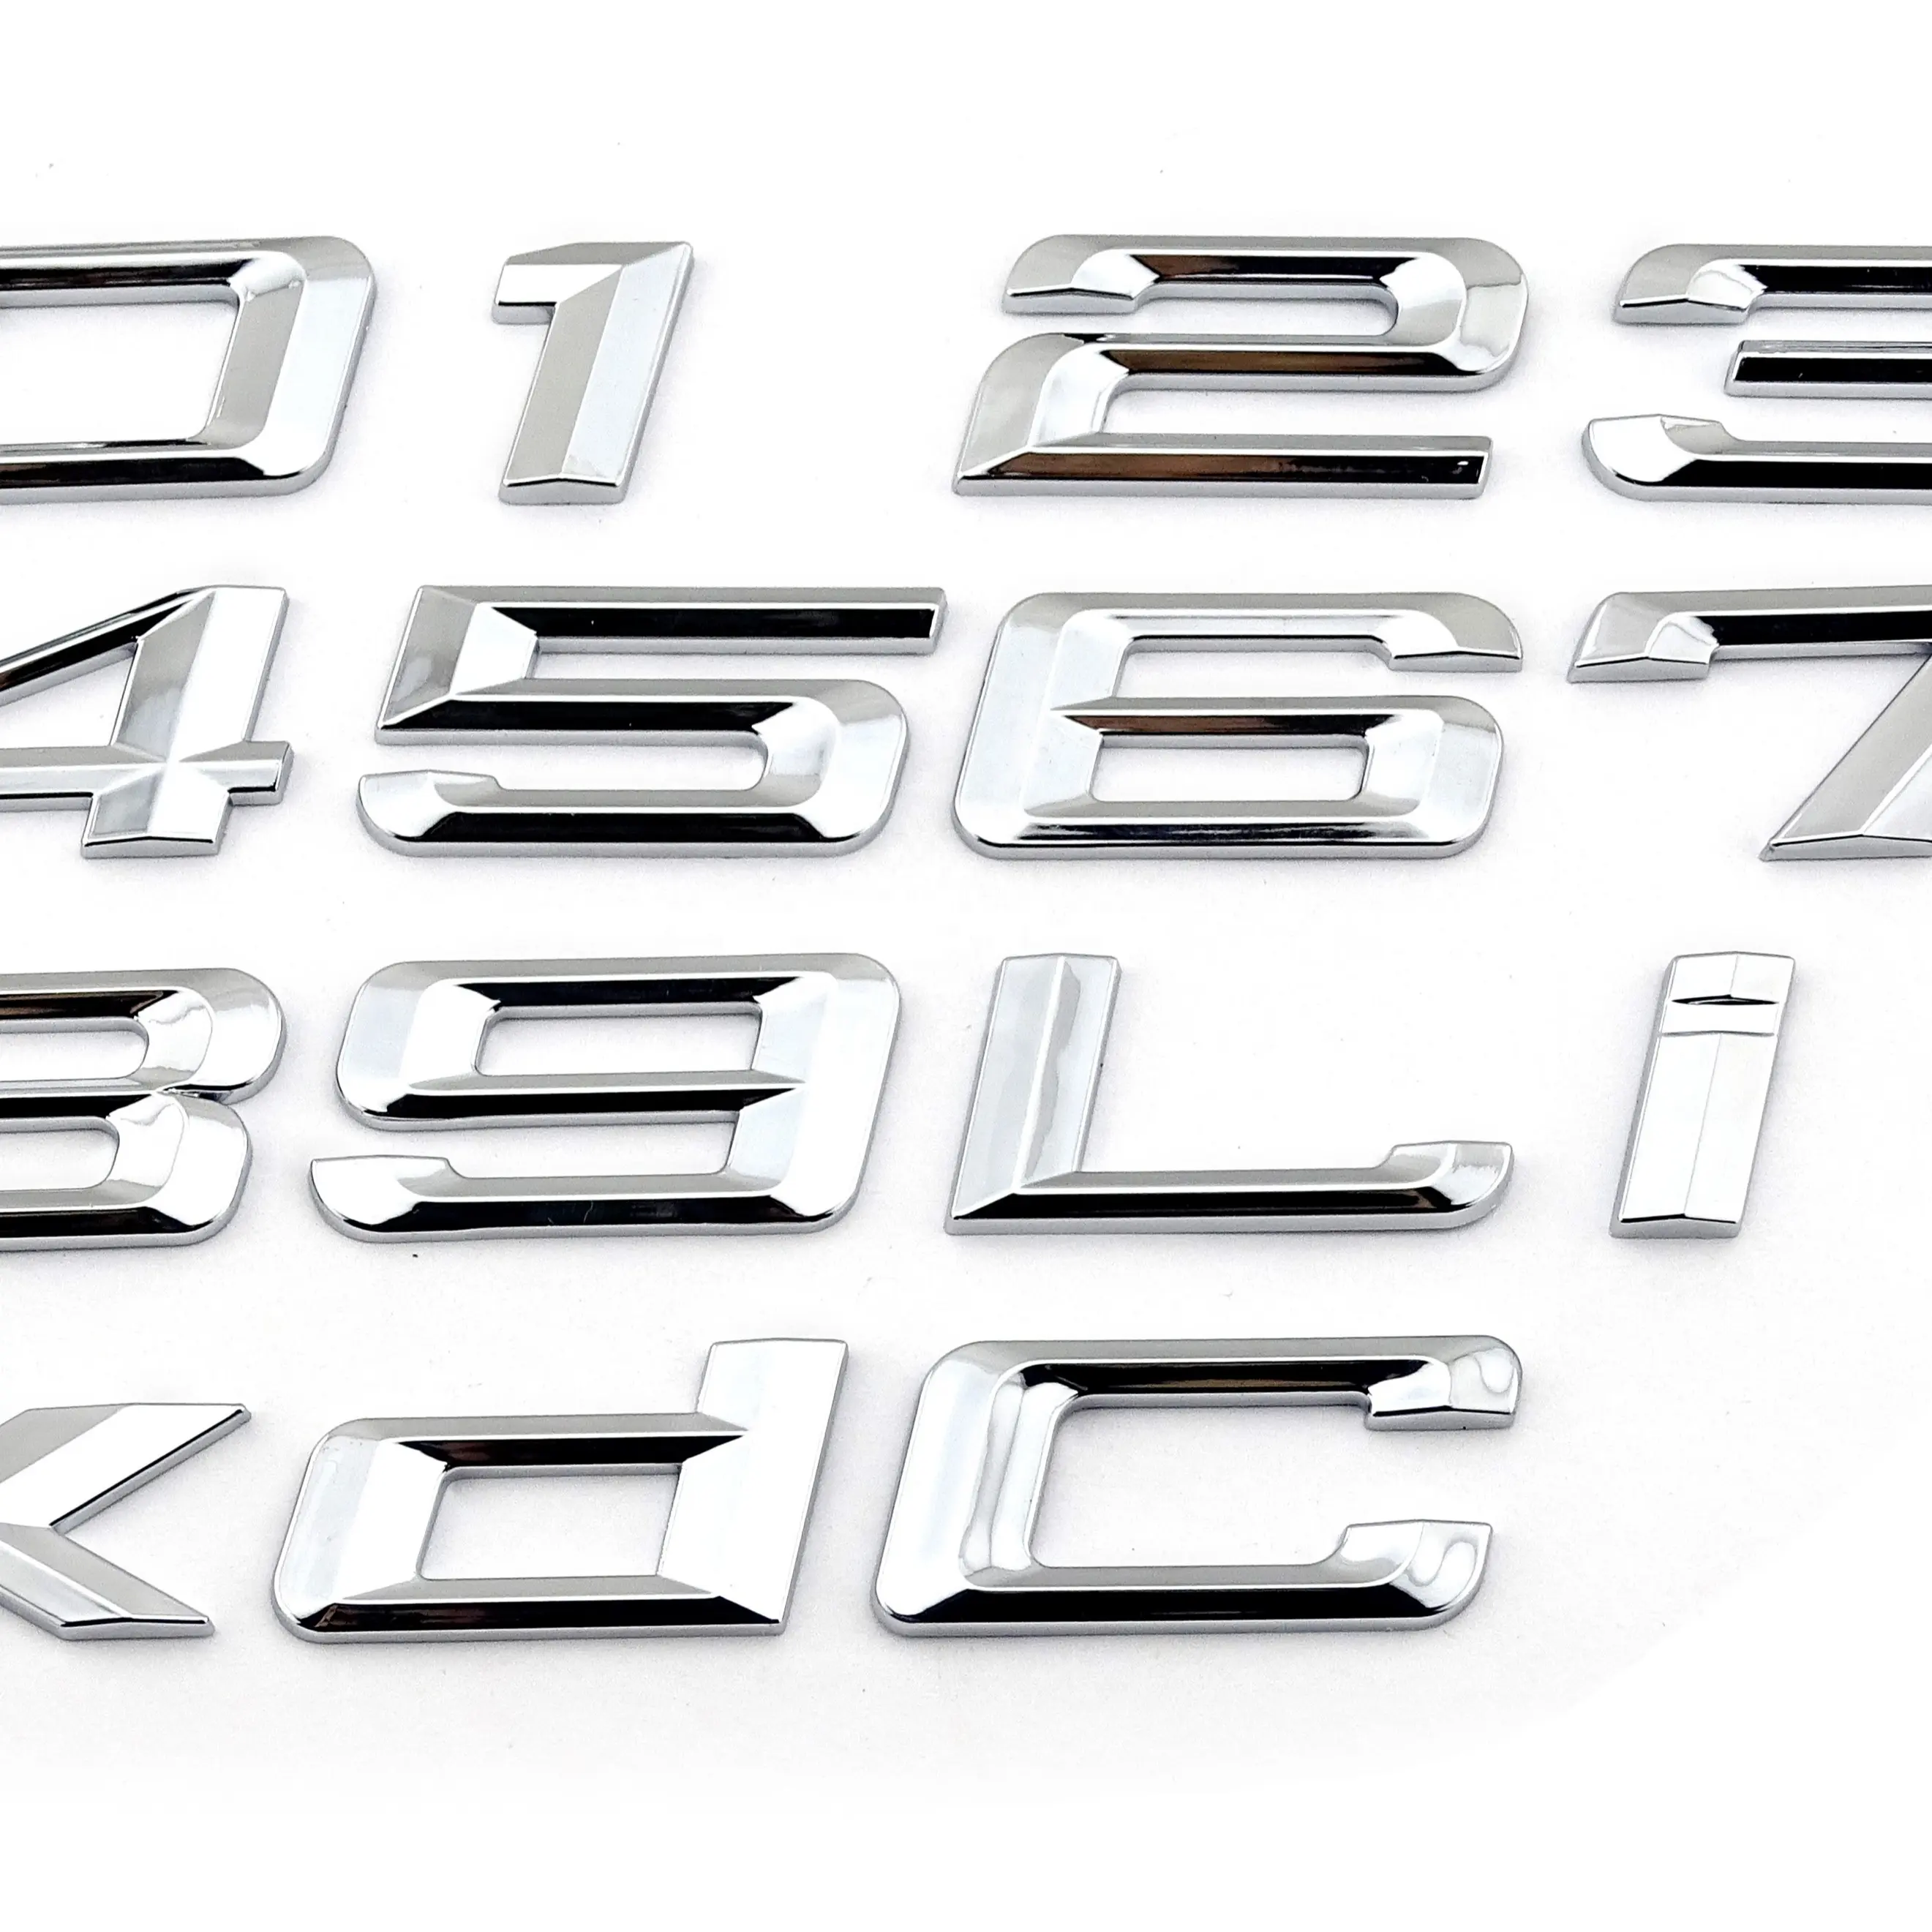 Adesivo per carrozzeria auto con lettere e numeri cromati 3D